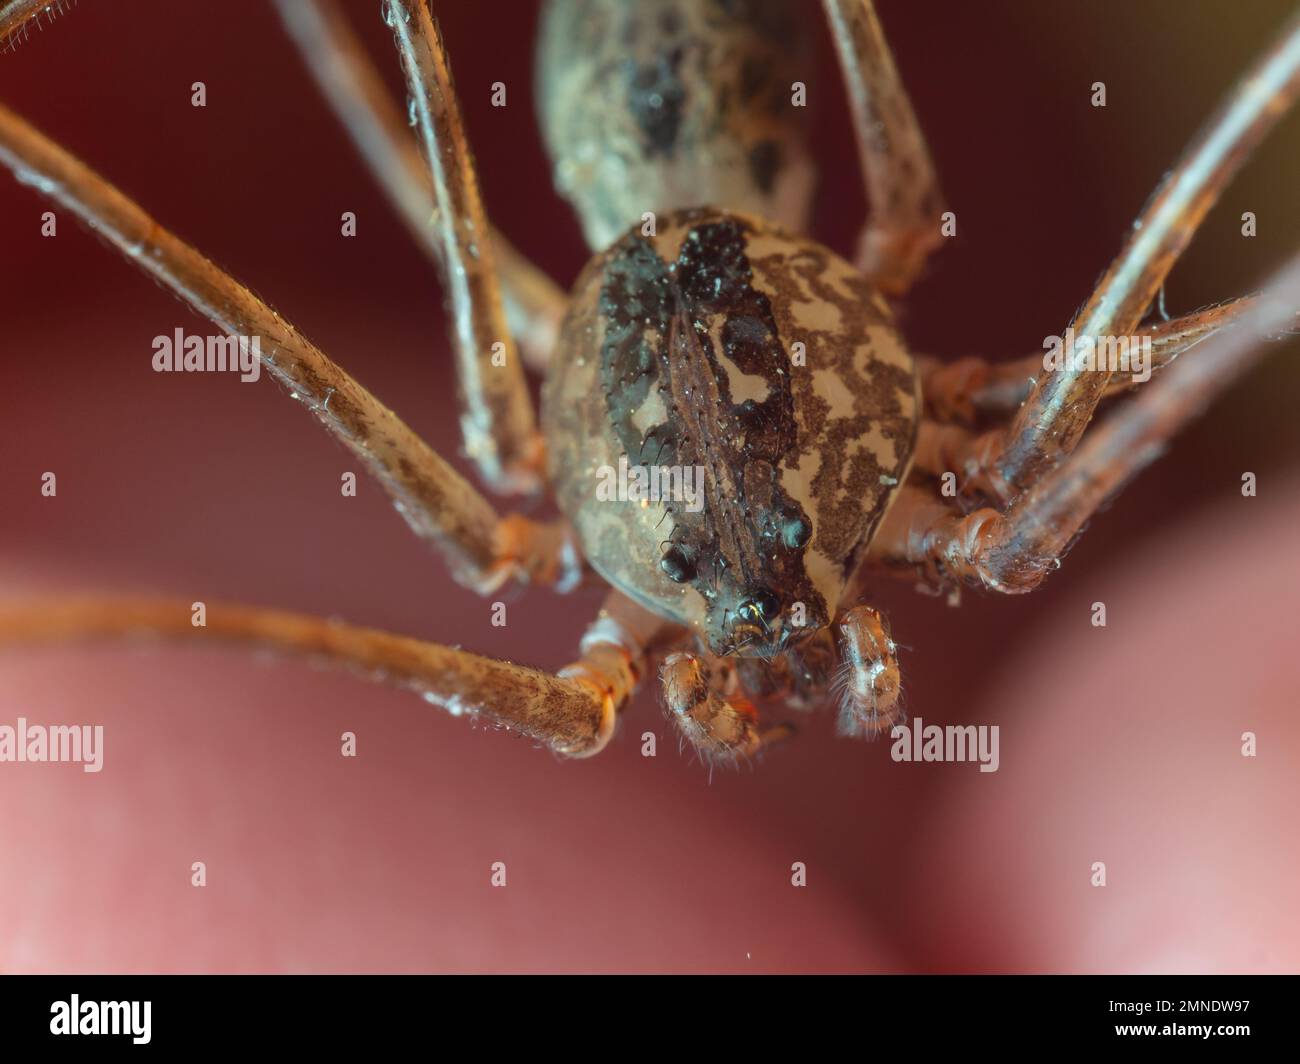 Détails d'une araignée à cracher (Scytodes) sur la main humaine, également connue sous le nom de aranha cuspideira. Banque D'Images